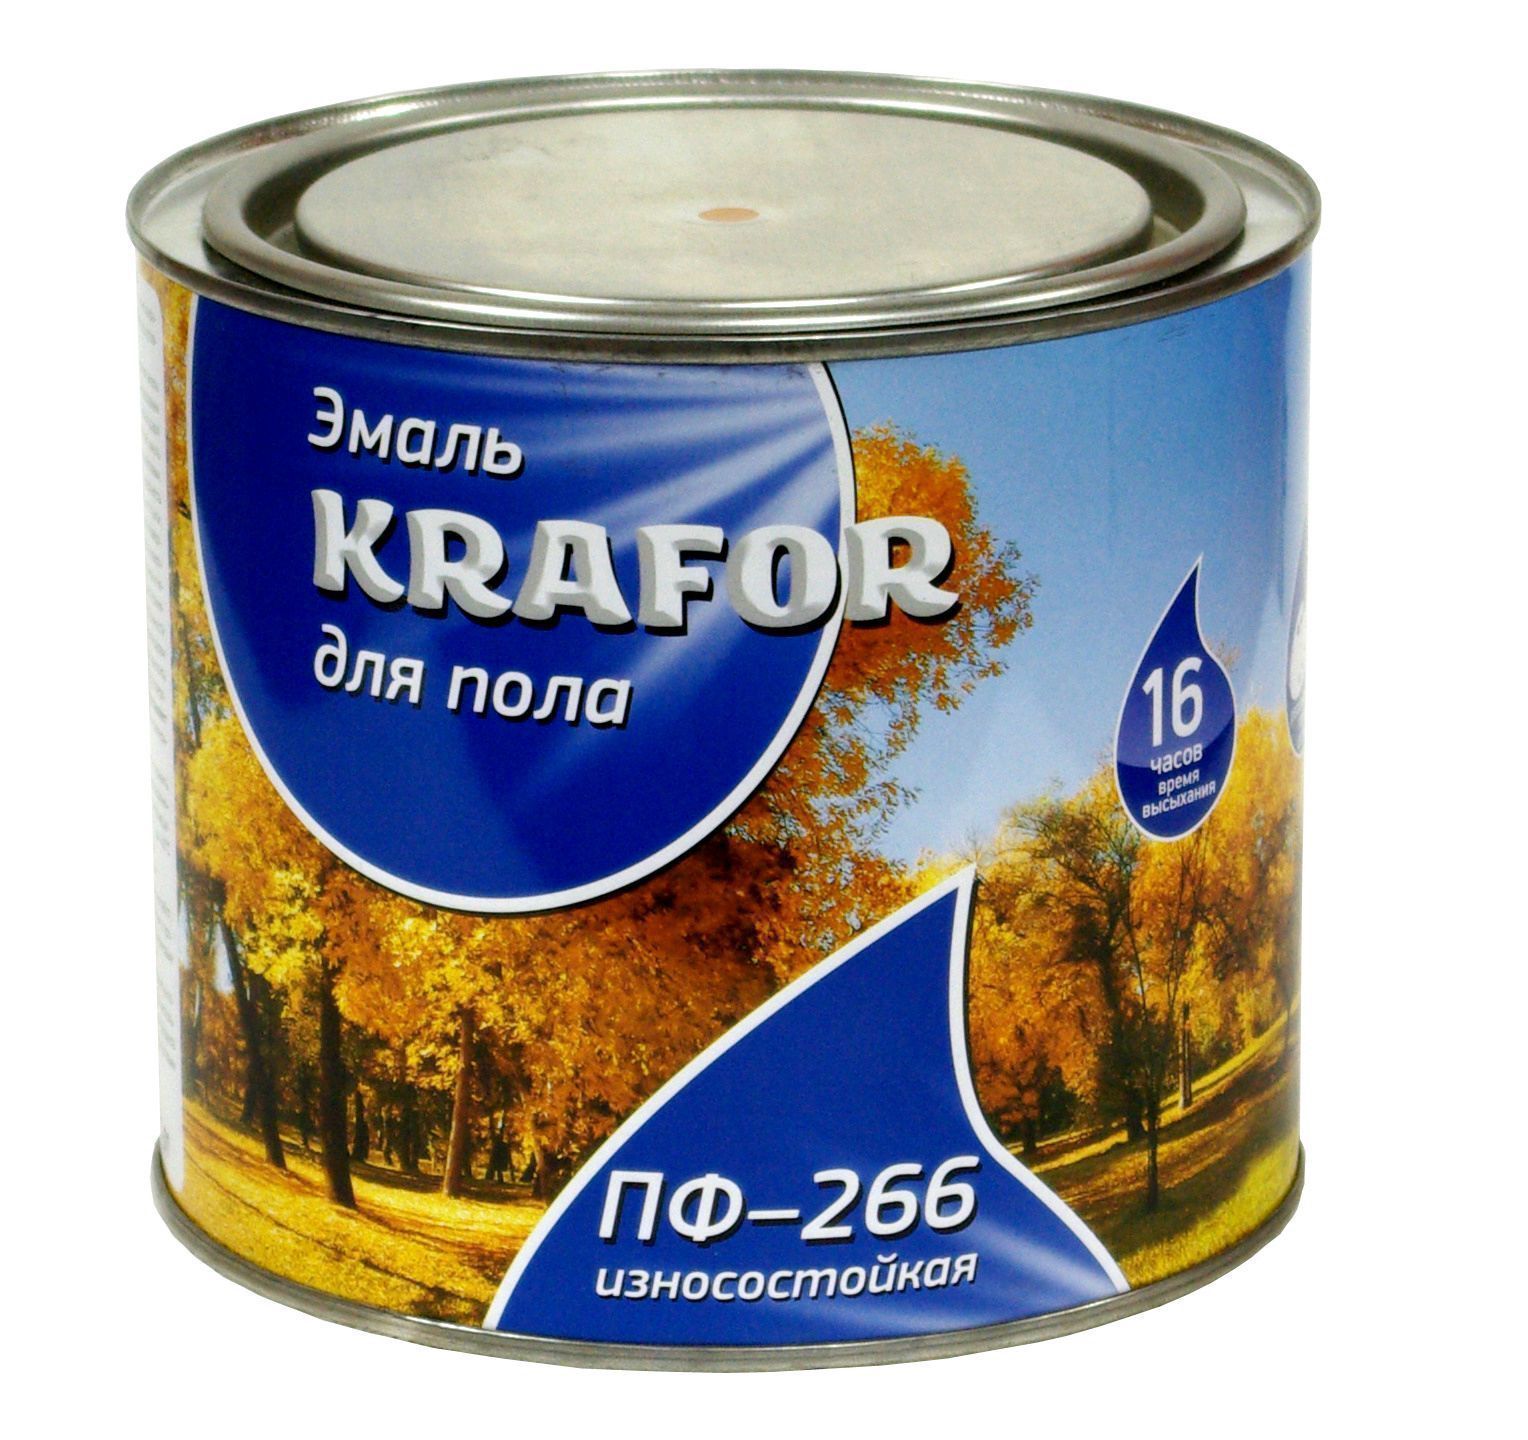 Эмаль Krafor пф-266 желто-коричНевая 1.9кг 26018 Krafor от магазина Tehnorama